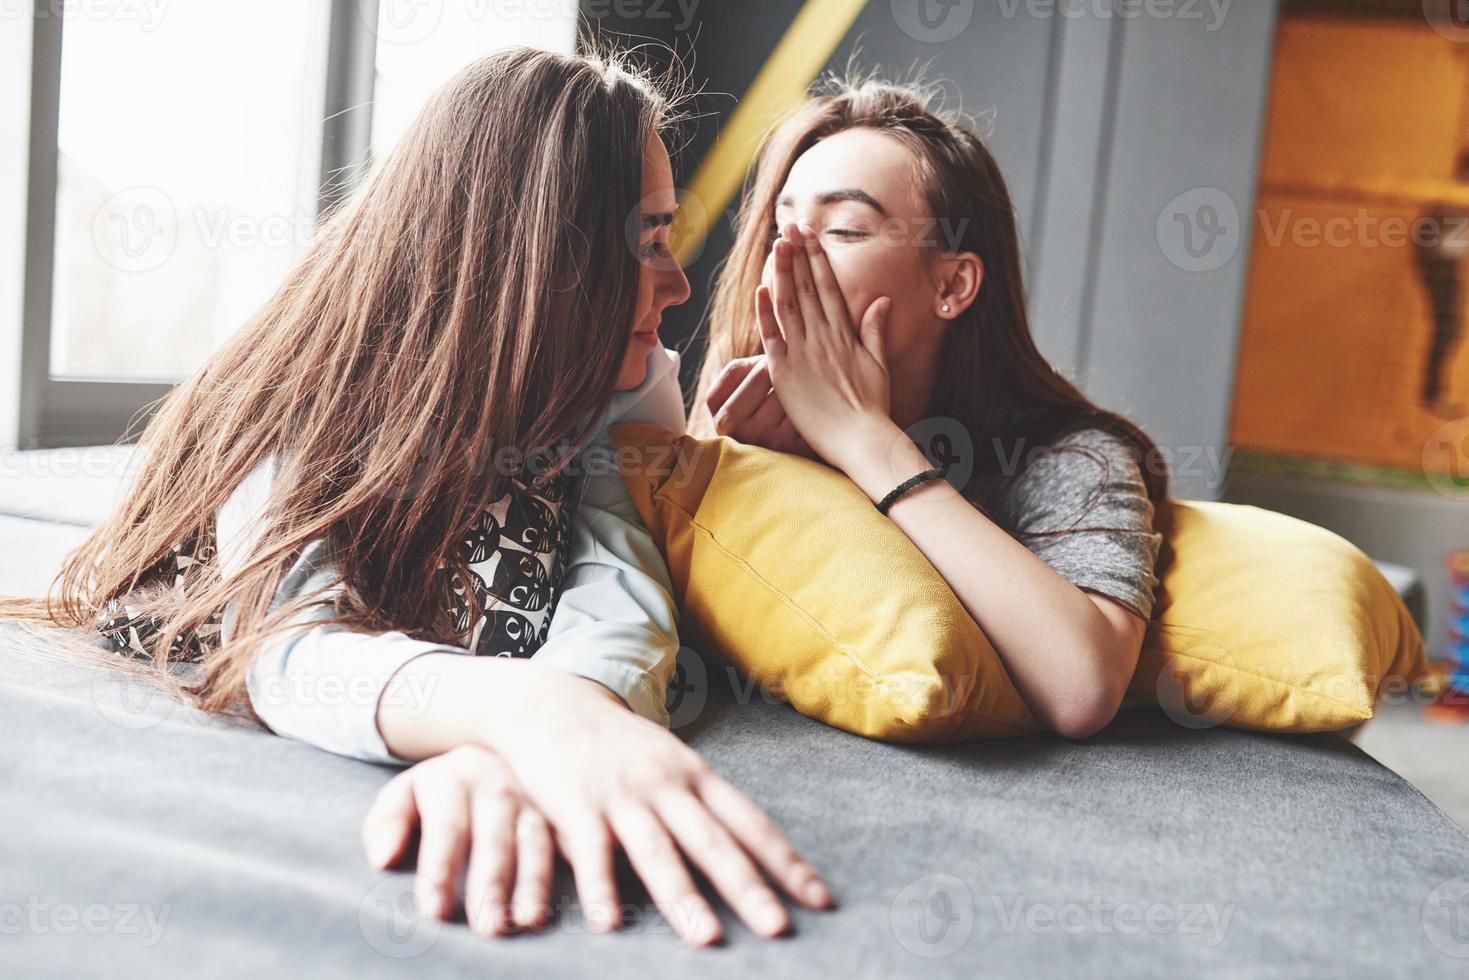 duas belas jovens irmãs gêmeas passando um tempo juntos com travesseiros. irmãos se divertindo em casa conceito foto